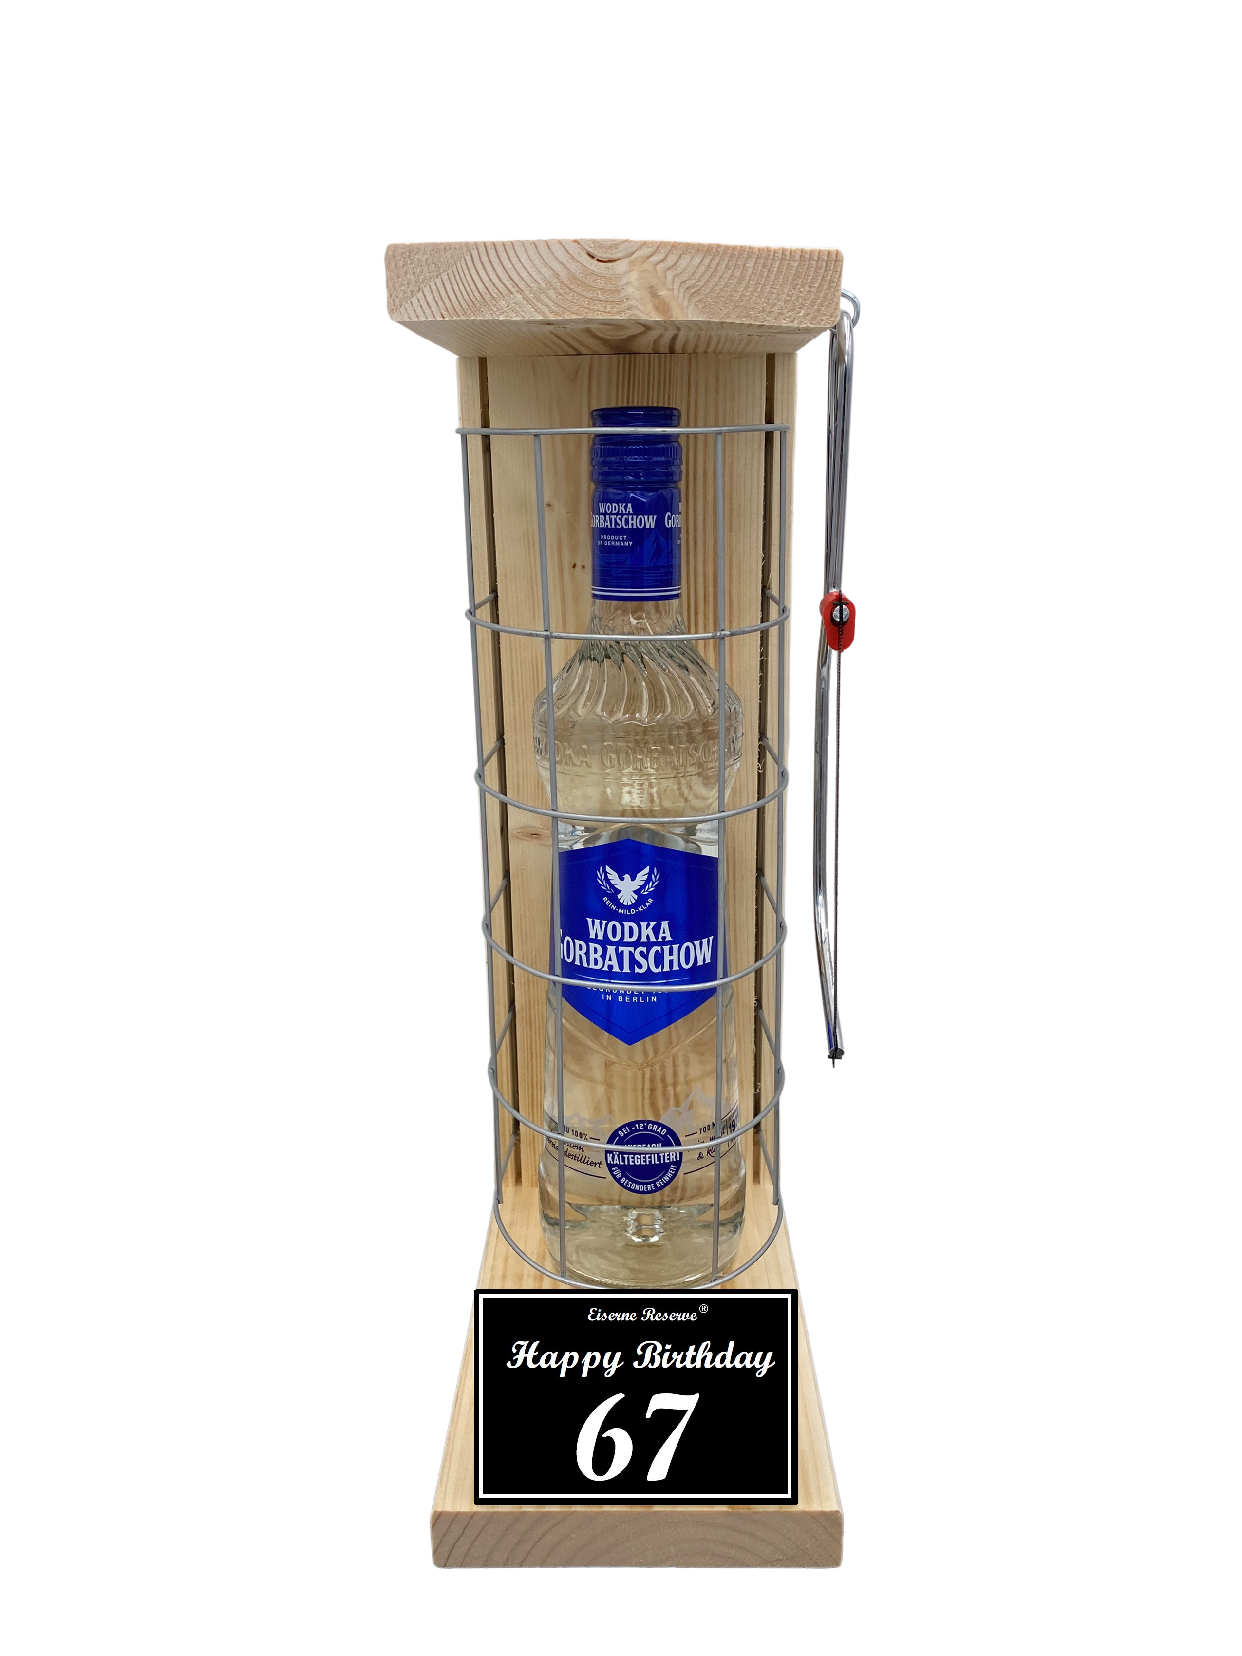 Wodka Geschenk zum 67 Geburtstag - Eiserne Reserve Gitterkäfig